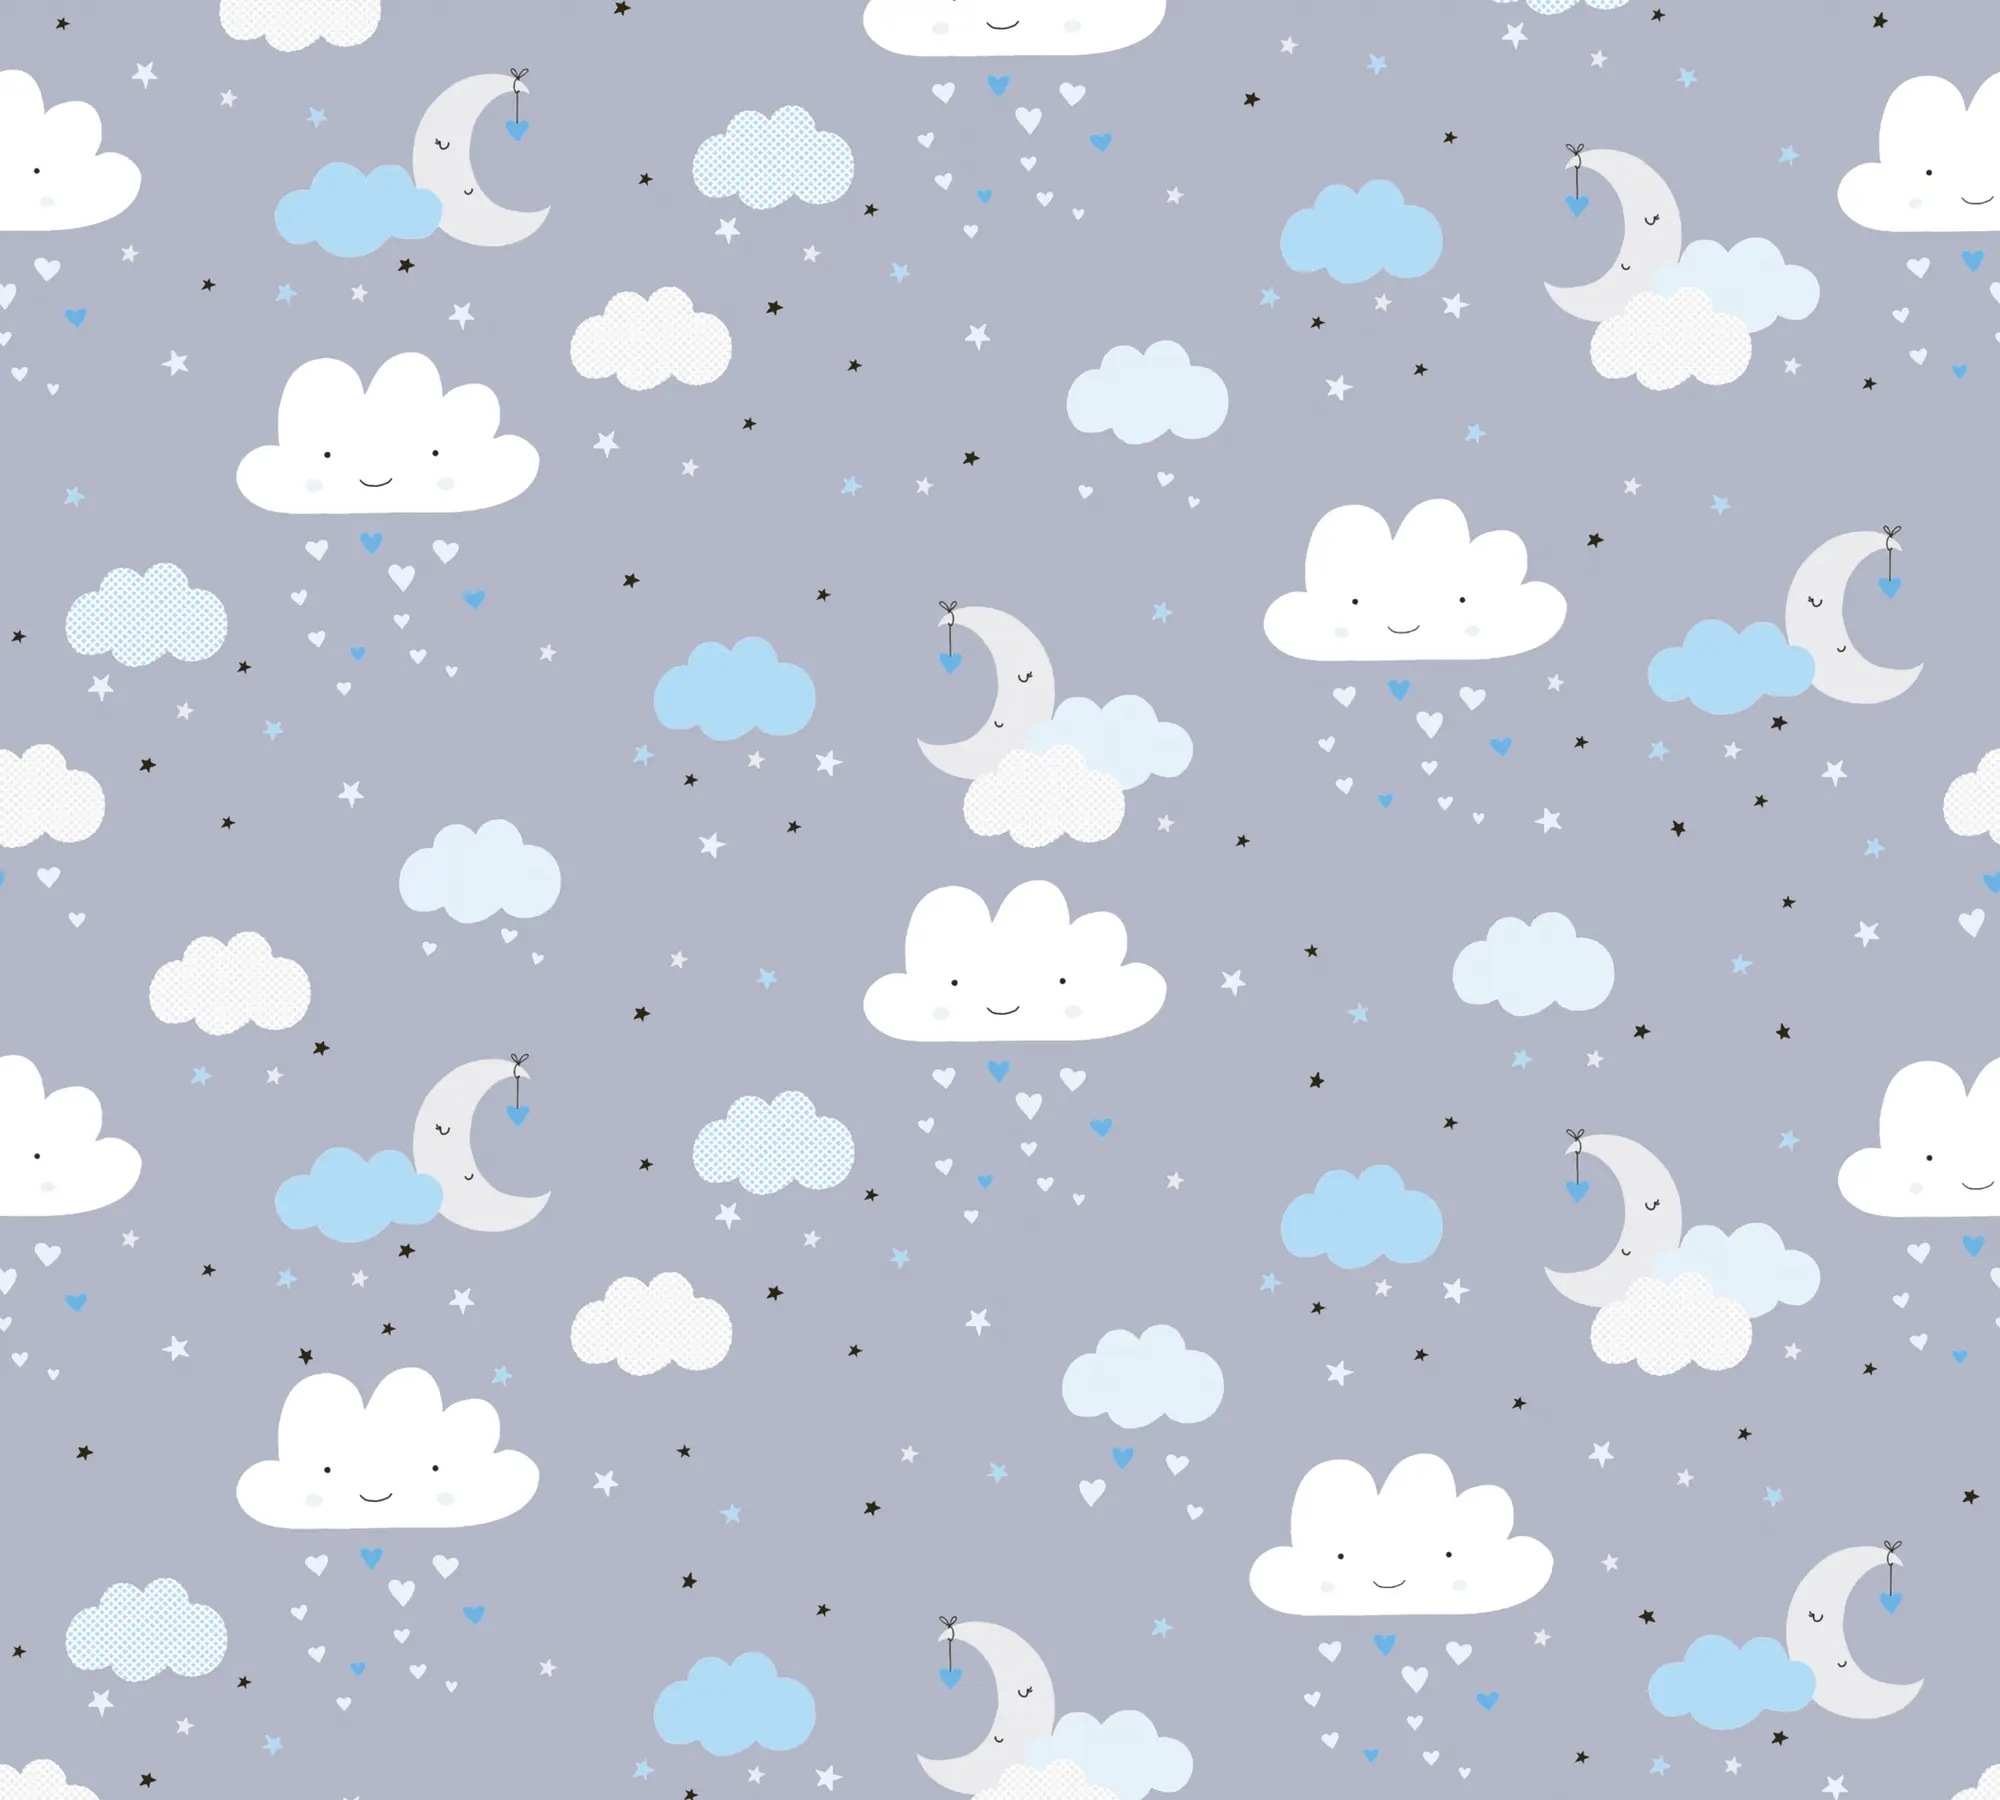 Kinderzimmertapete Wolken Grau Blau Wei脽